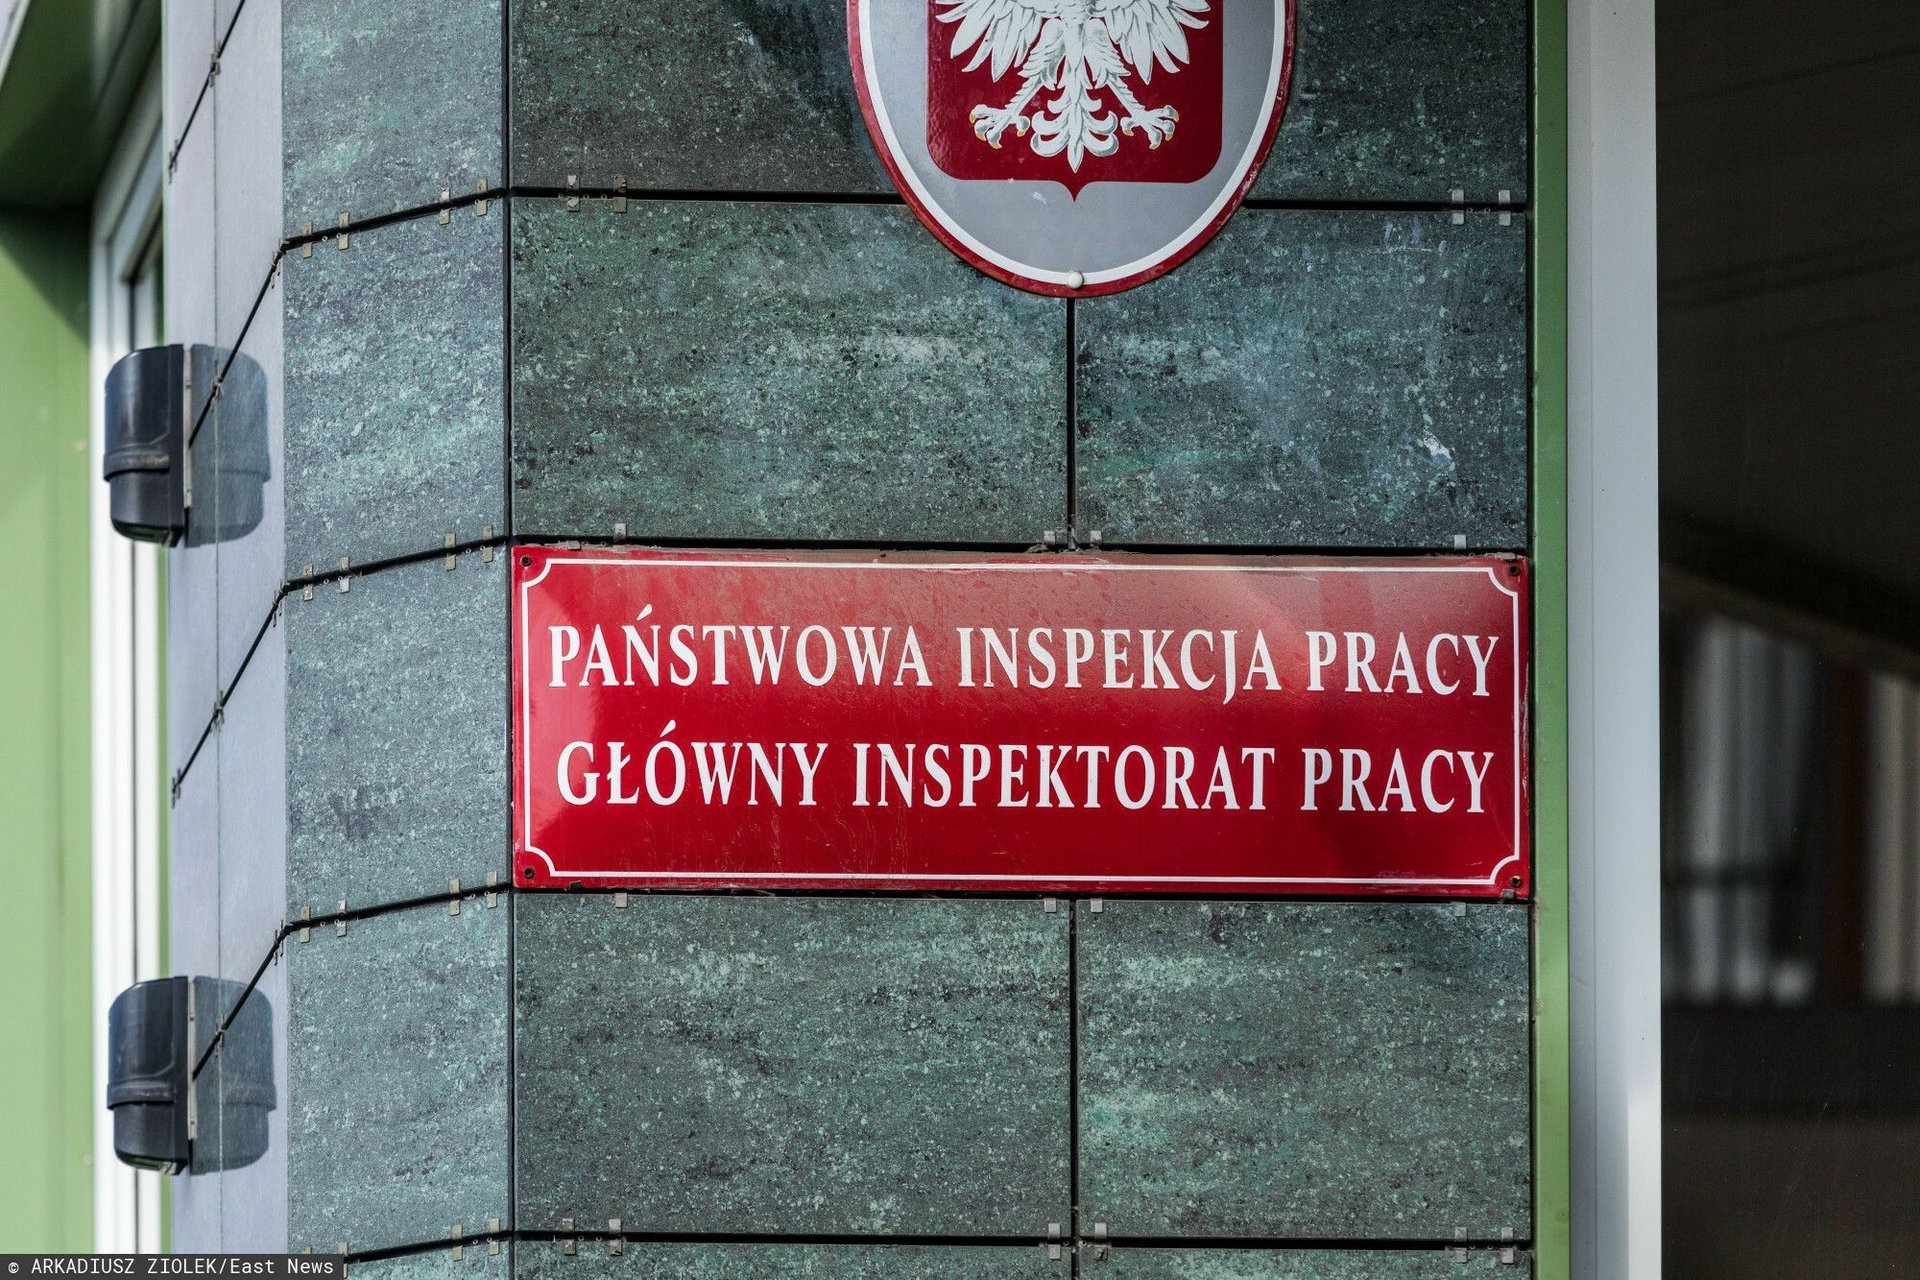 fot: Arkadiusz Ziolek/ East News. Warszawa 10.09.2020. n/z Tablica informacyjna Panstwowej Inspekcji Pracy - Glowny Inspektorat Pracy.